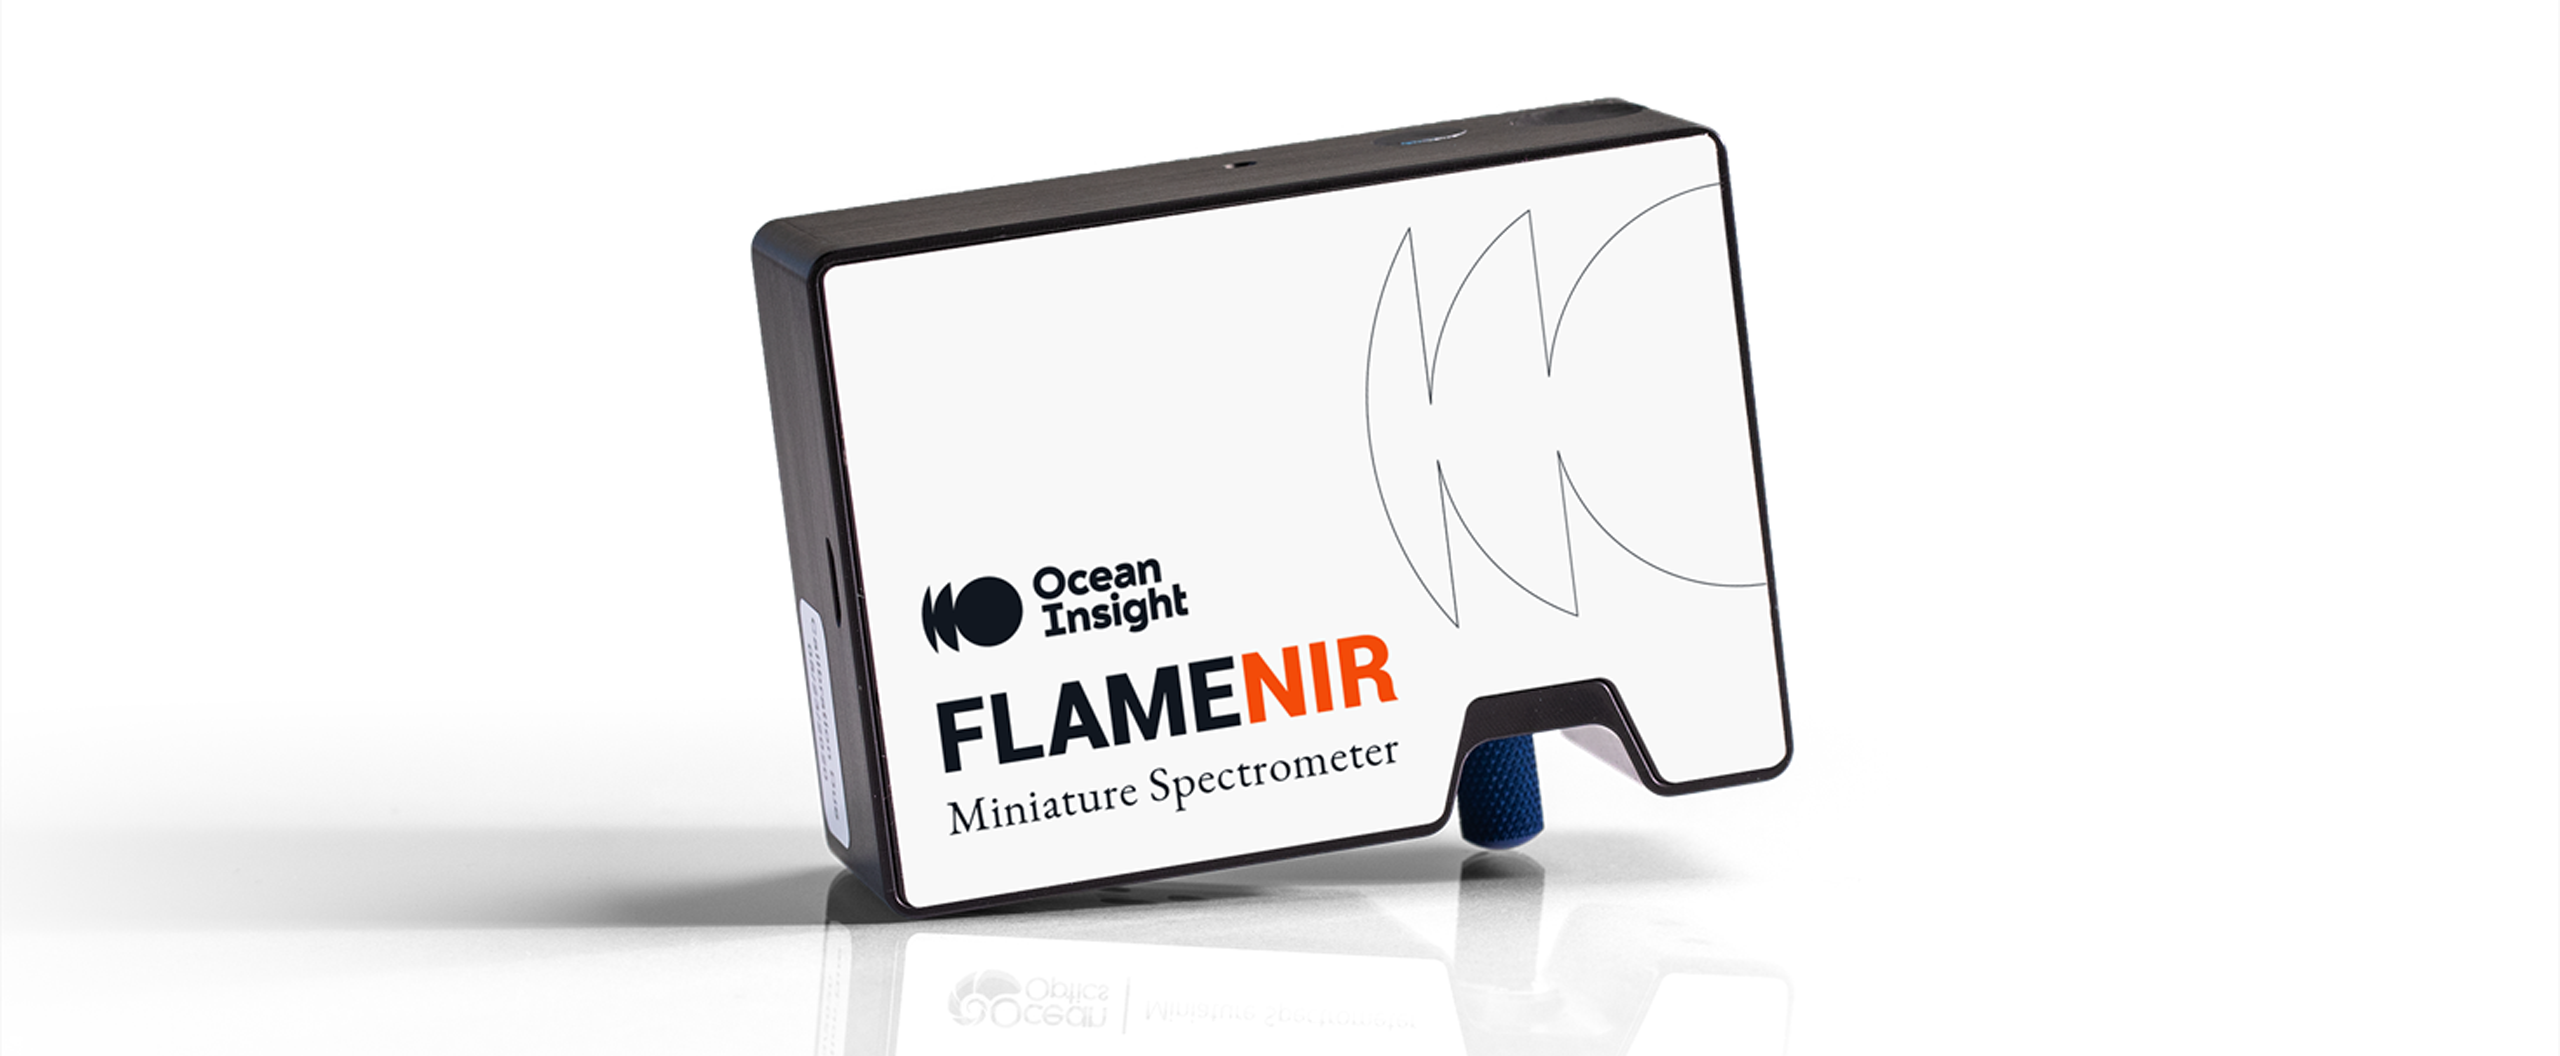 Flame-NIR+ 近赤外分光器